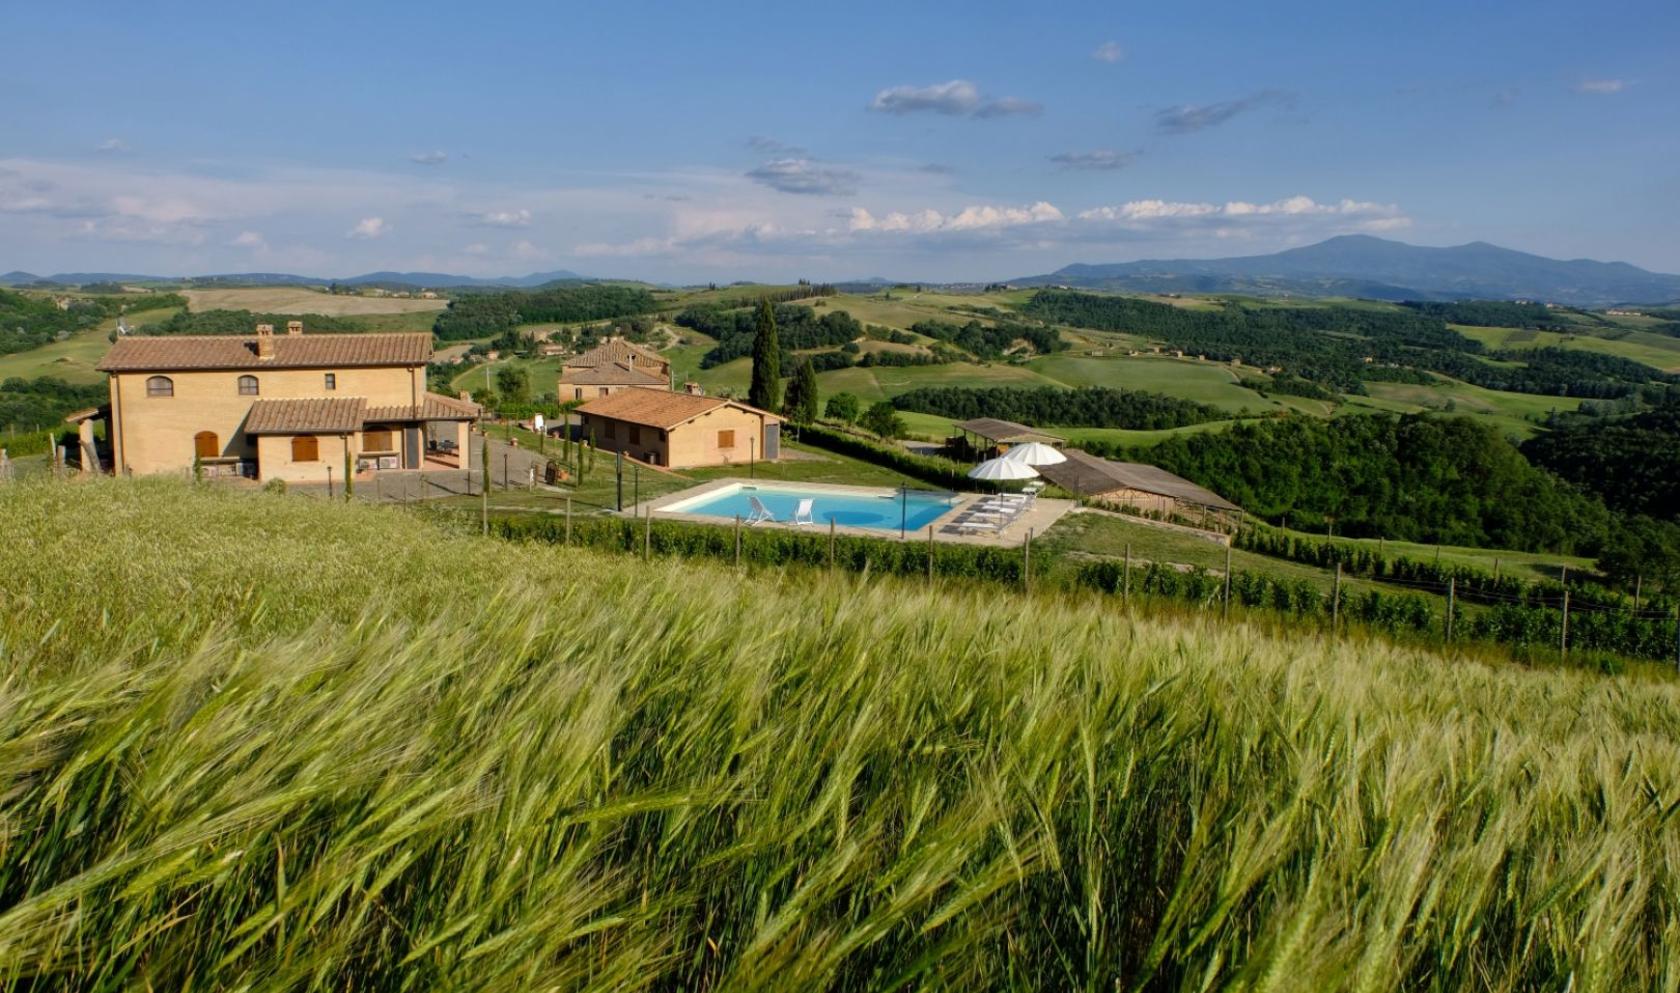 Toscana Immobiliare - Incorniciata dalle sinuose colline della campagna senese, è in vendita questa bellissima proprietà a Montalcino.